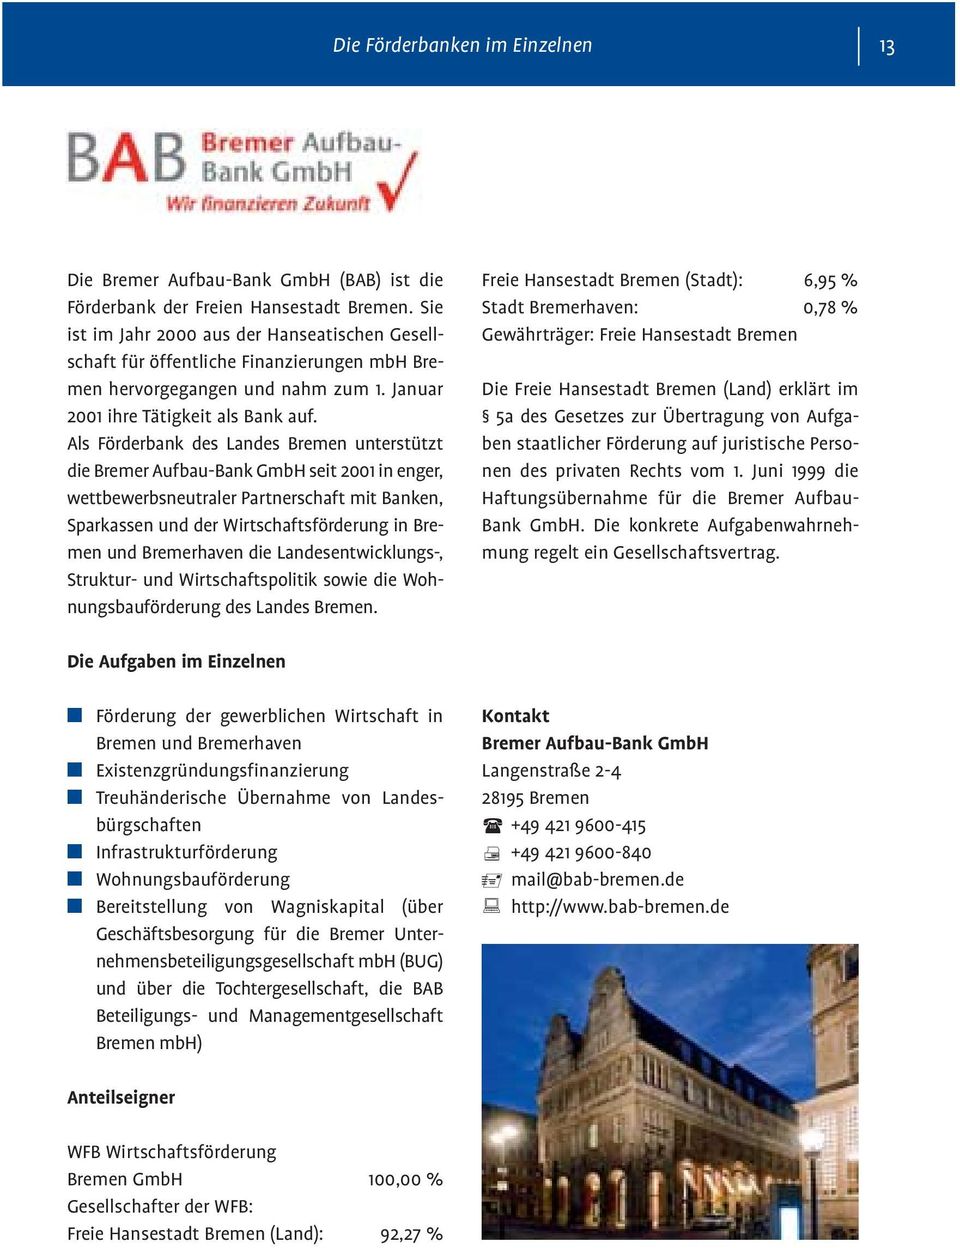 Als Förderbank des Landes Bremen unterstützt die Bremer Aufbau-Bank GmbH seit 2001 in enger, wettbewerbsneutraler Partnerschaft mit Banken, Sparkassen und der Wirtschaftsförderung in Bremen und